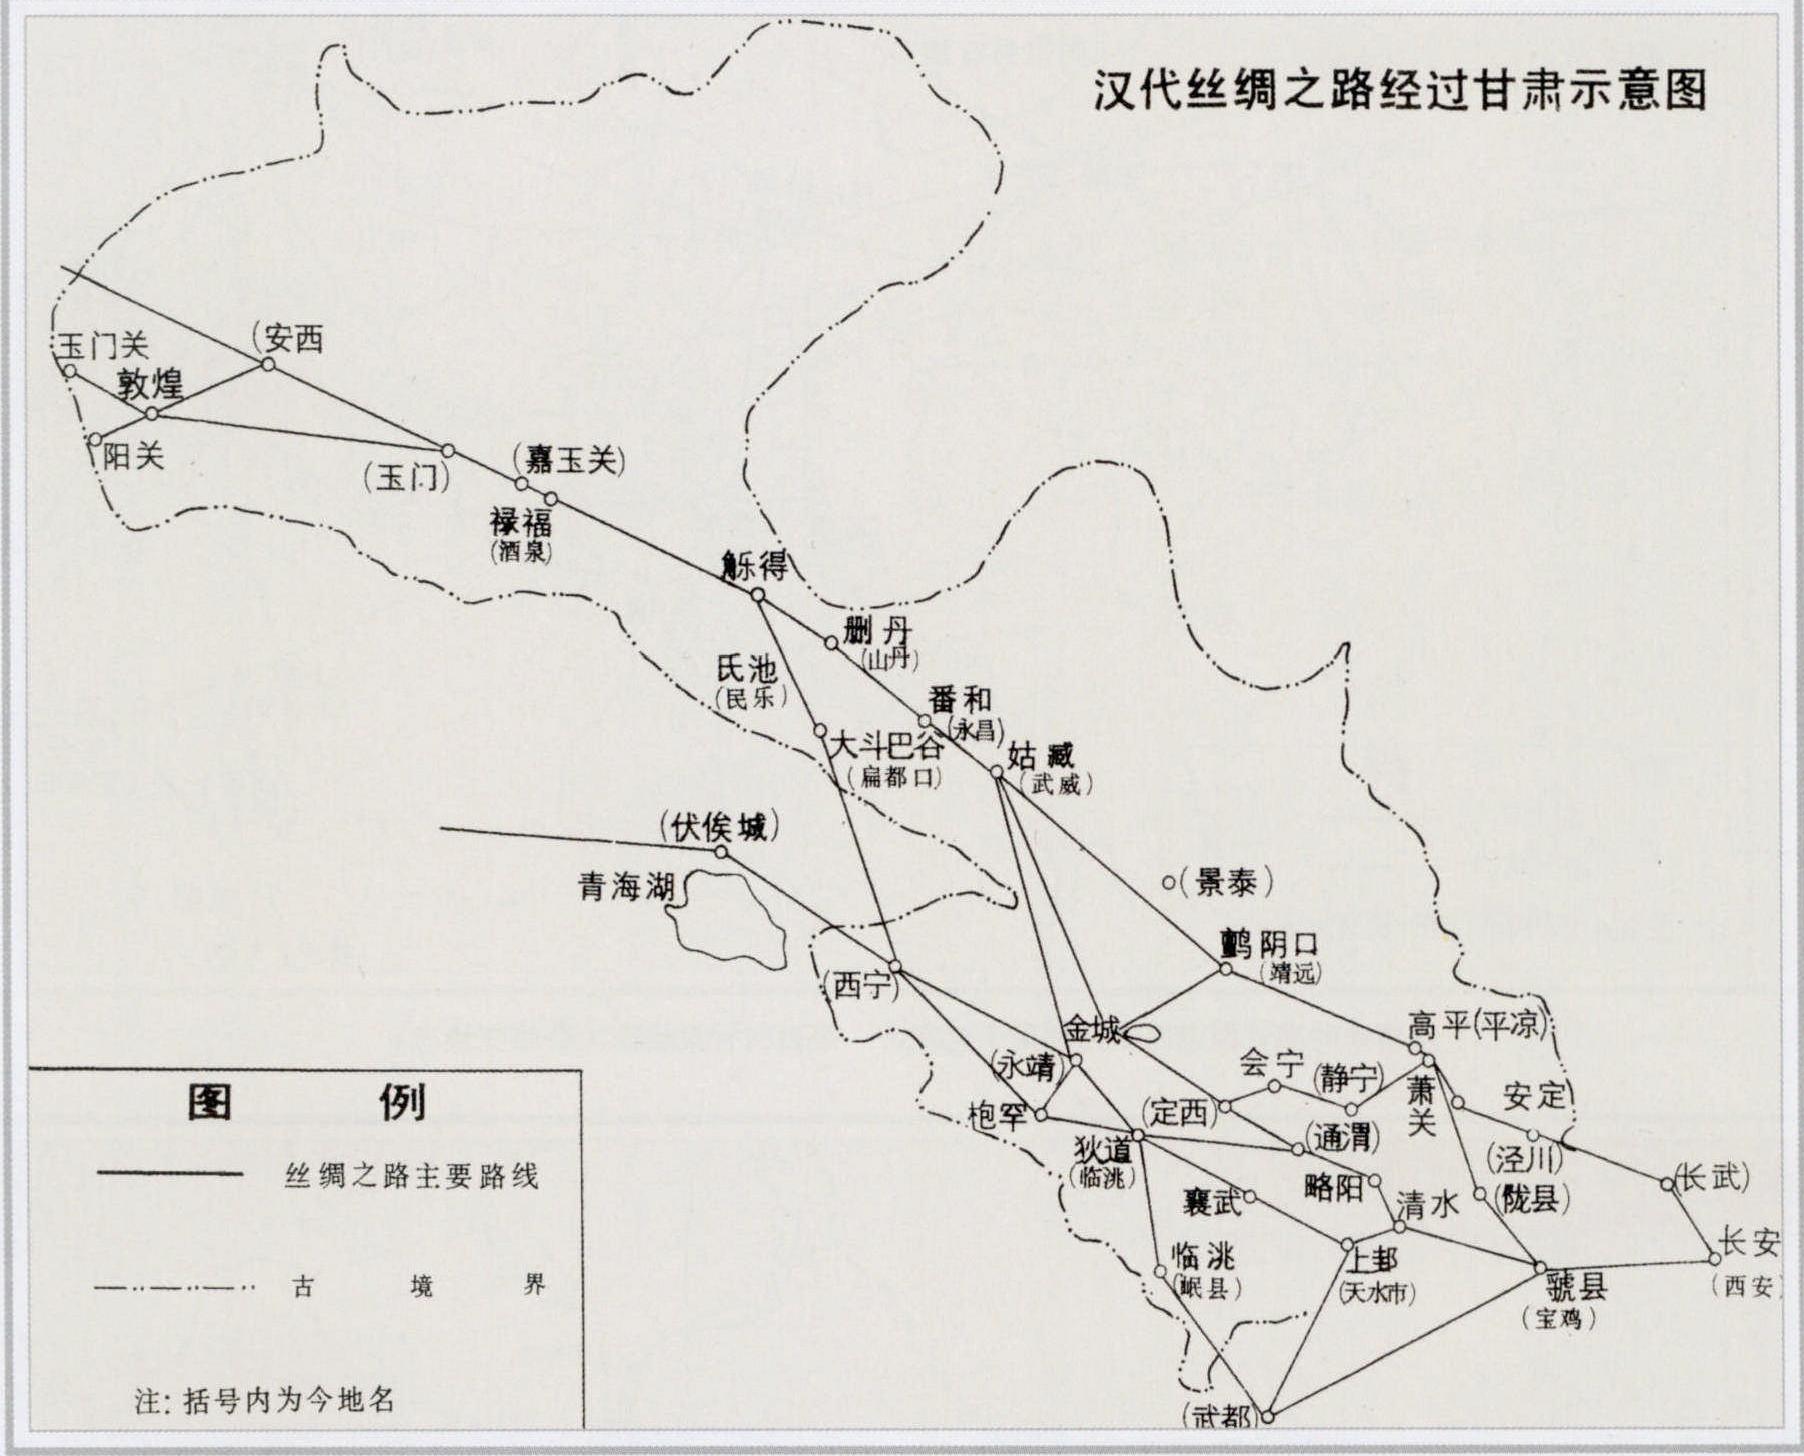 汉代丝绸之路经过甘肃线路示意图